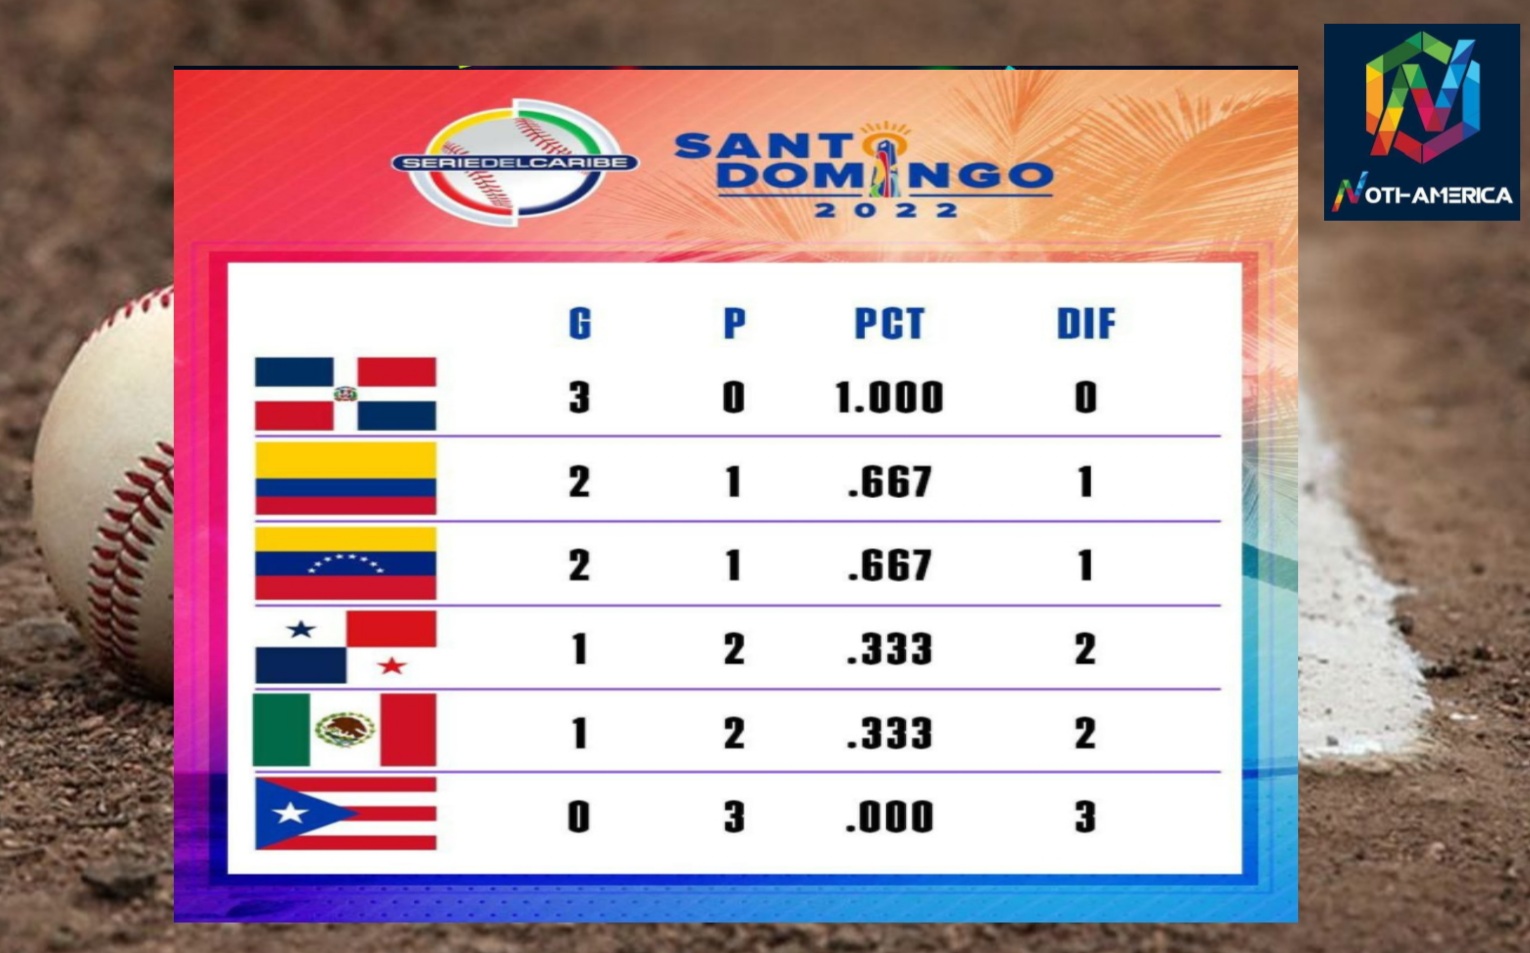 República Dominicana liderá la tabla de la Serie del Caribe 2022 Panamá